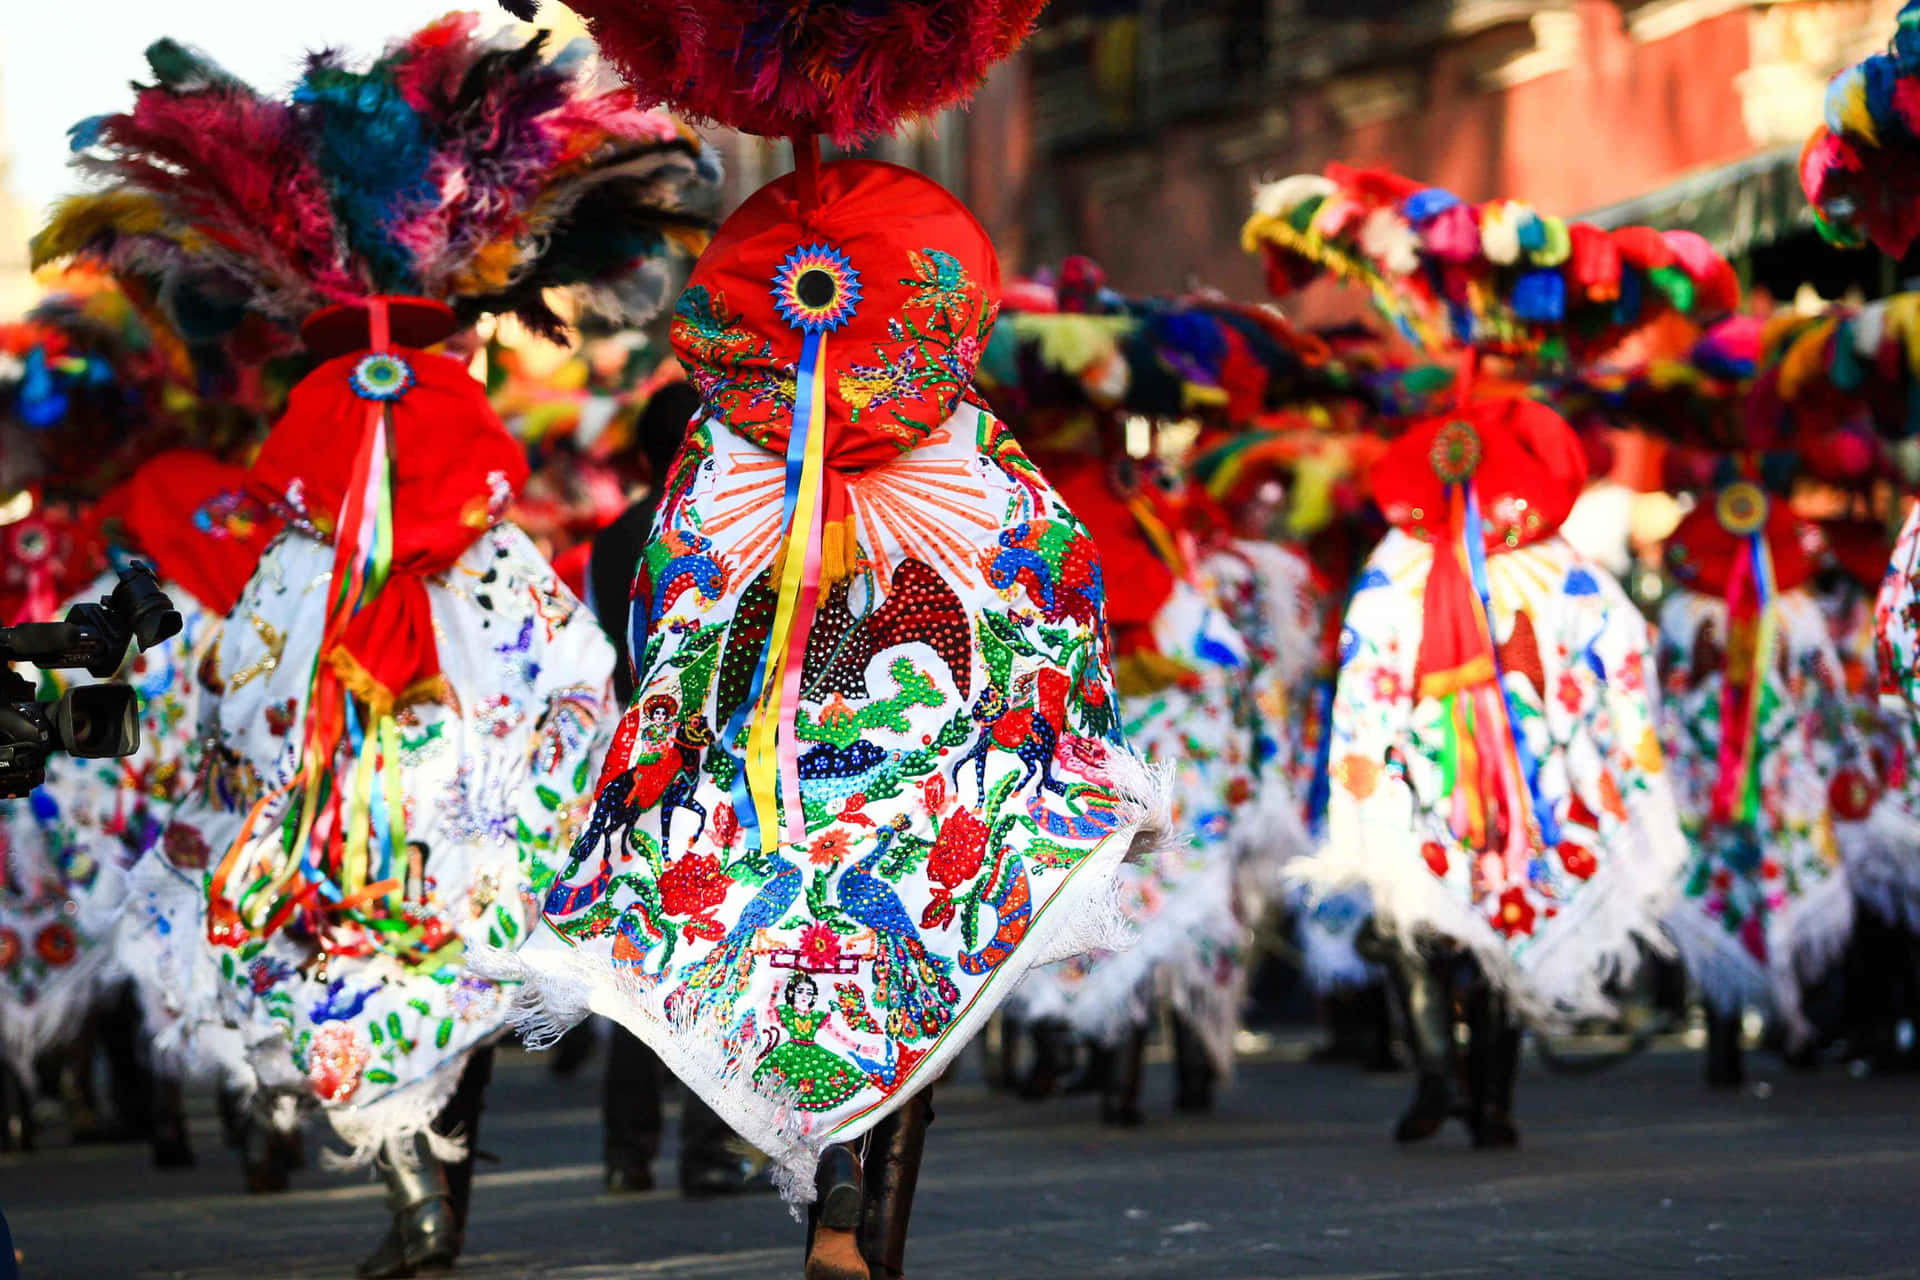 Desfrutede Uma Tradicional Festa De Rua Mexicana.